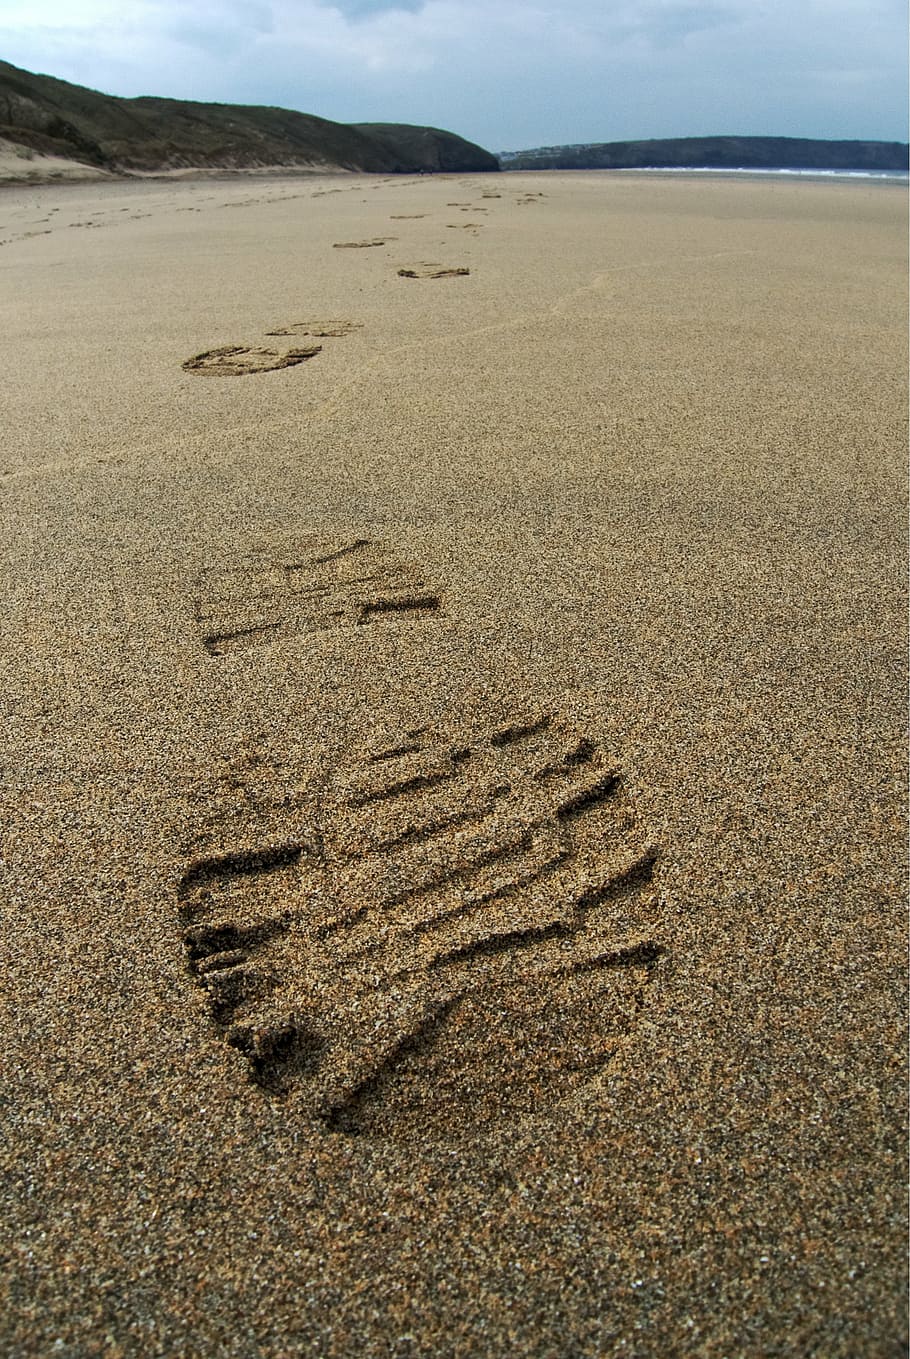 pegadas, fotografia em areia, pegada, areia, trilha, impressão, pé, bota, praia, viagem